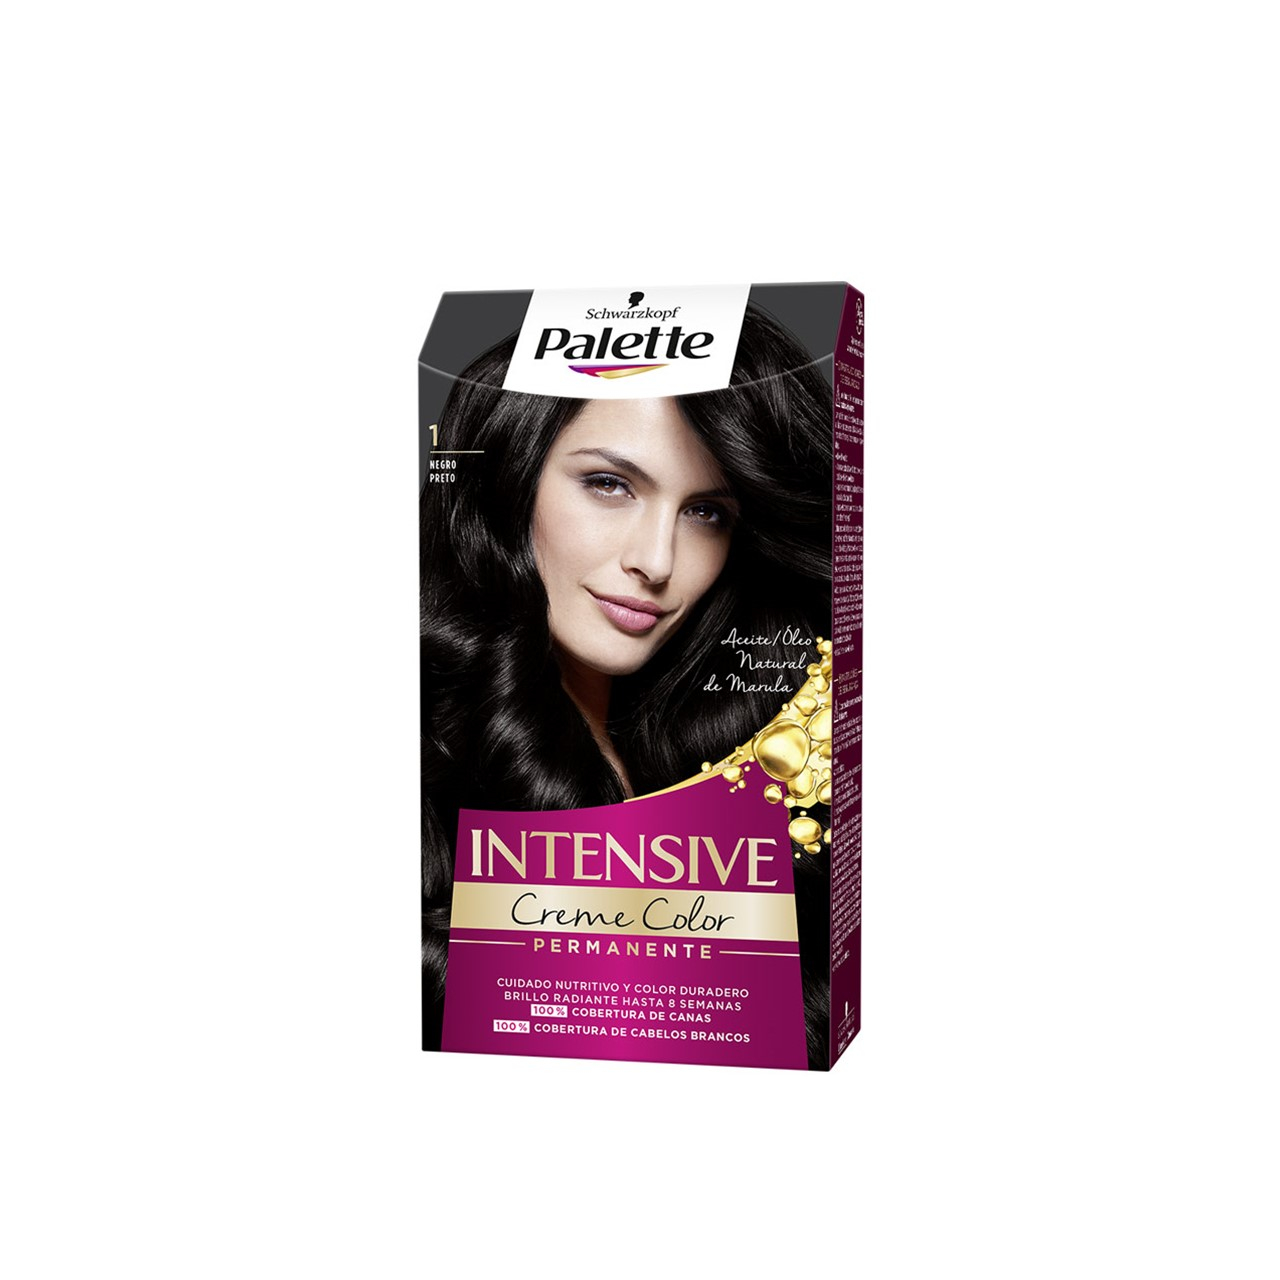 Schwarzkopf Palette Intensive Creme Color Permanent Hair Dye 1 Black